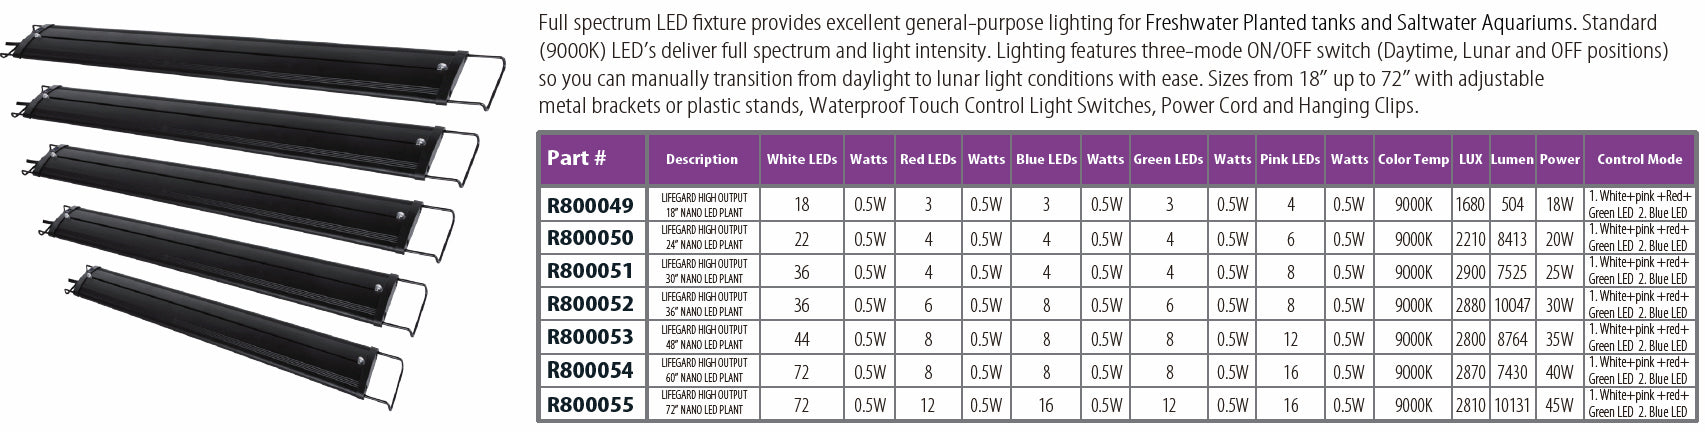 Full Spectrum LED Plant & Coral Aquarium Light by Lifegard Aquatics